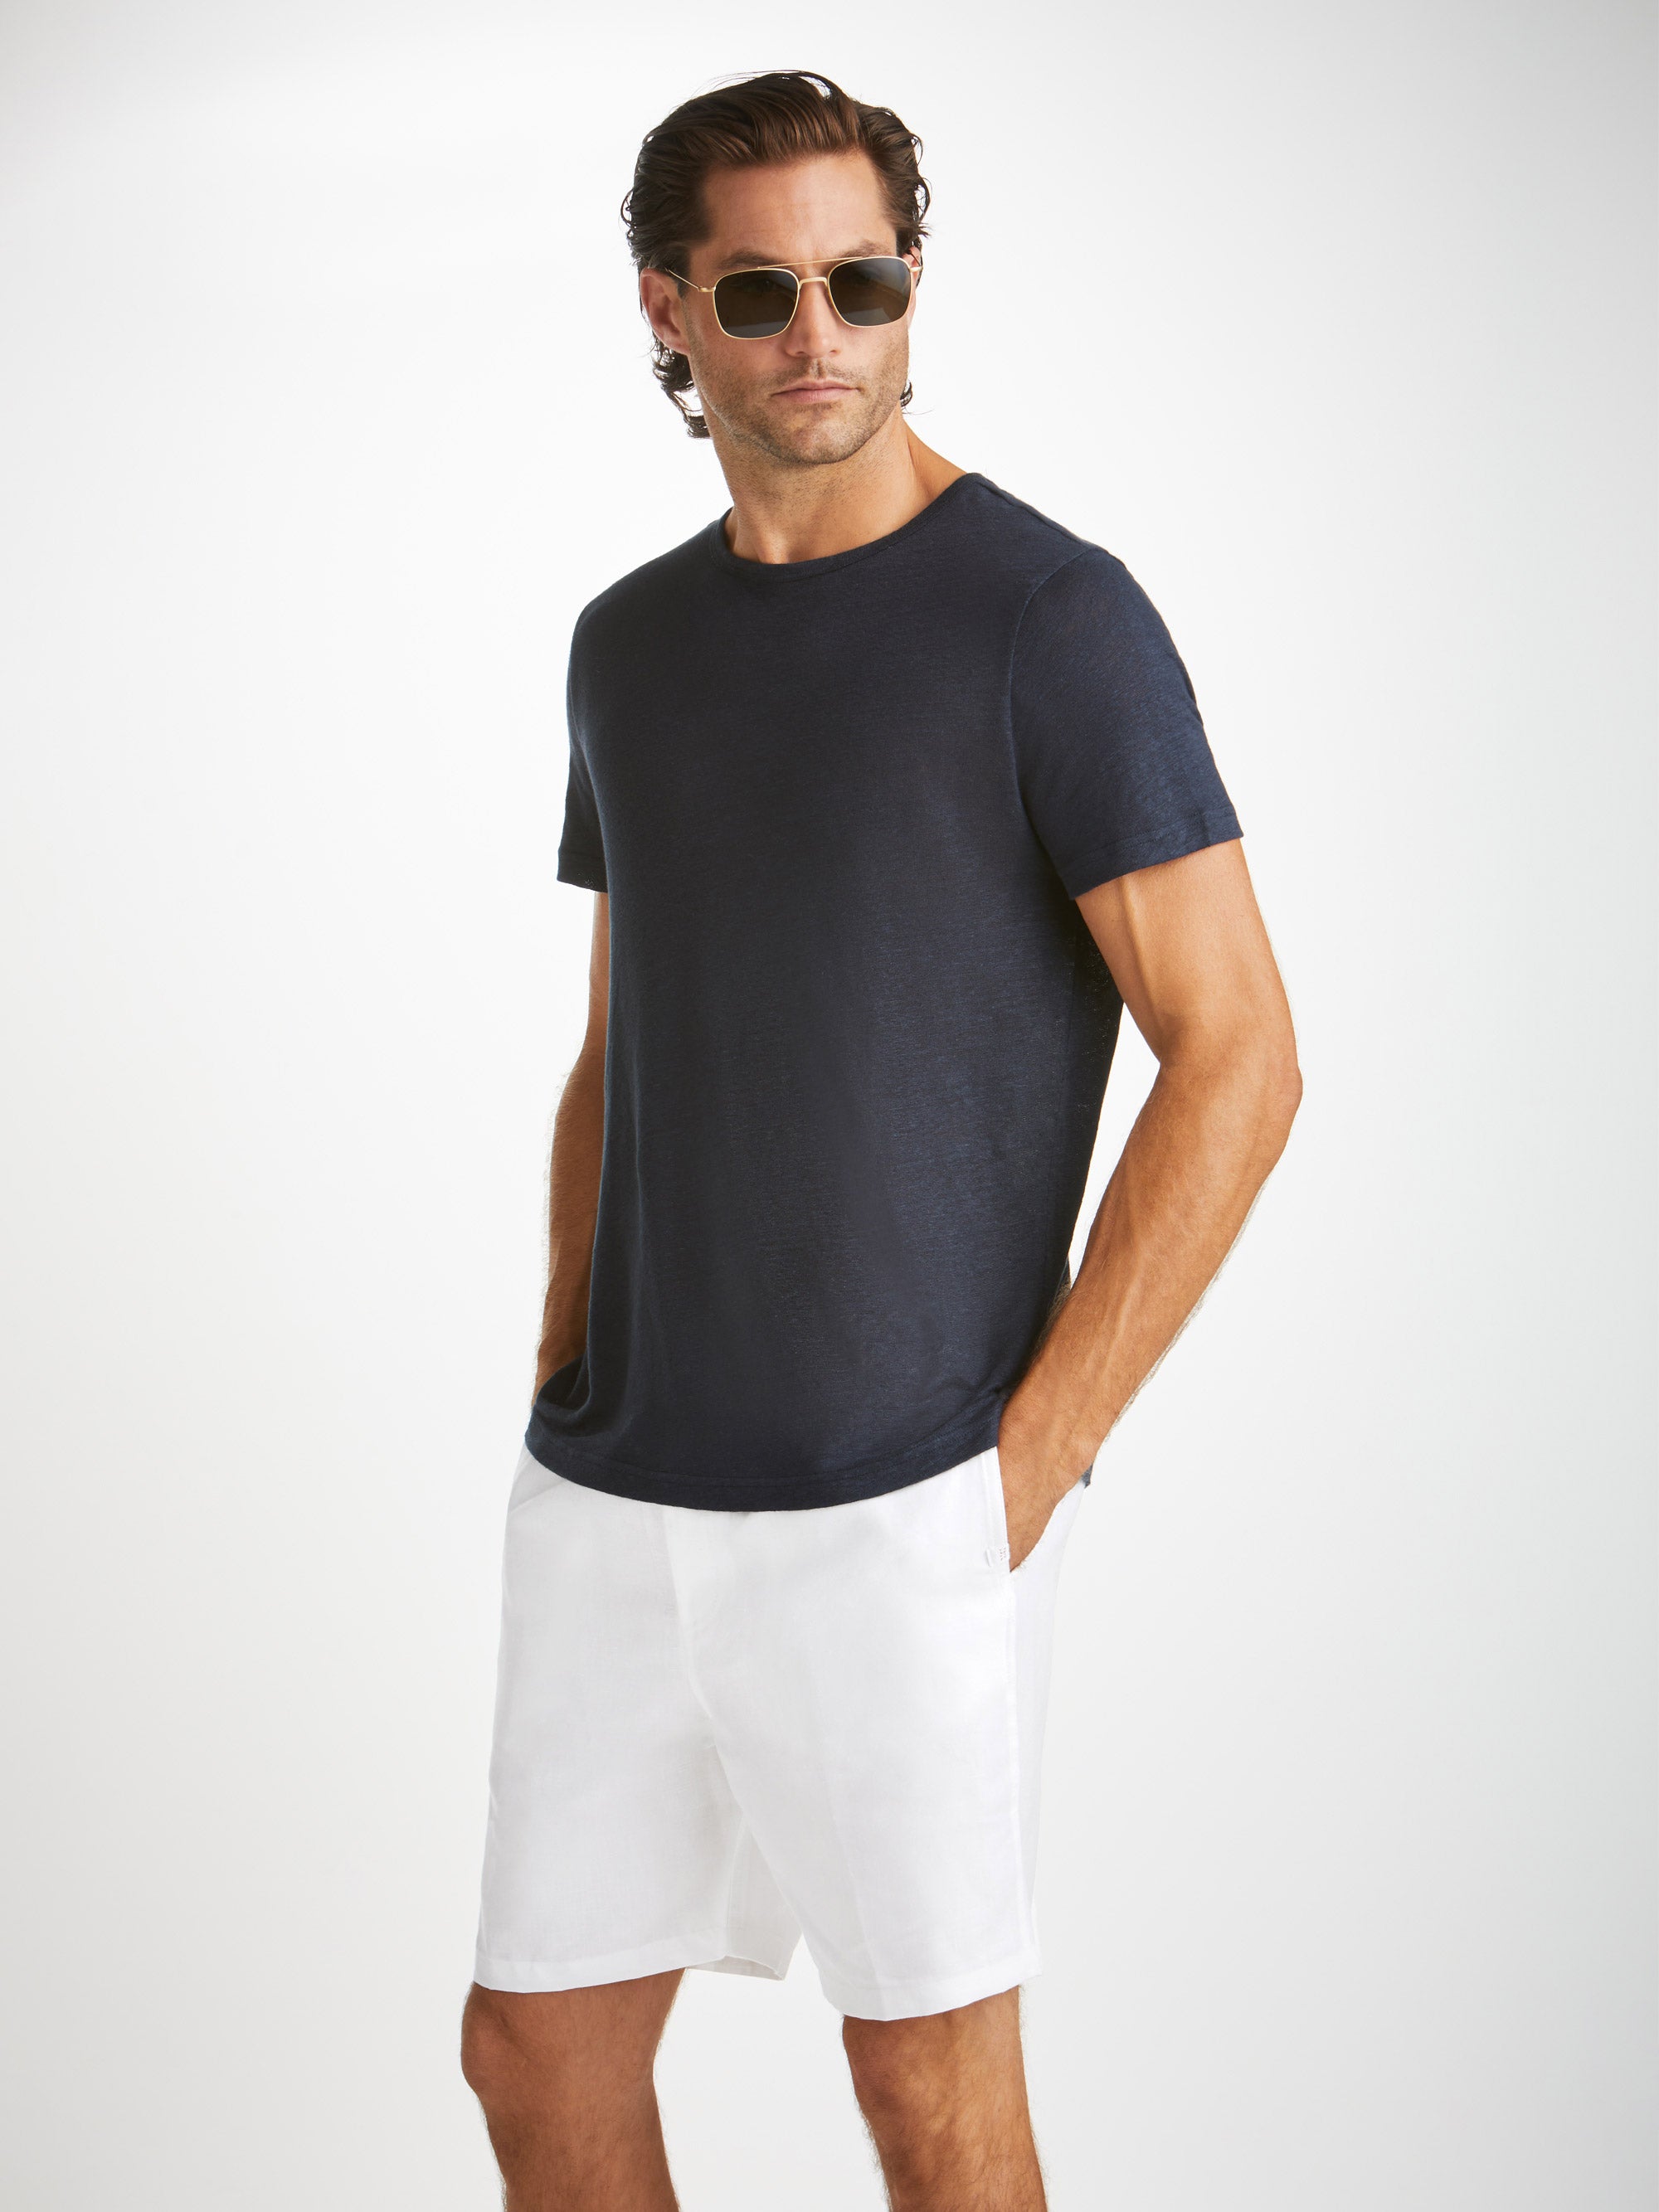 Men's Shorts Sydney Linen White